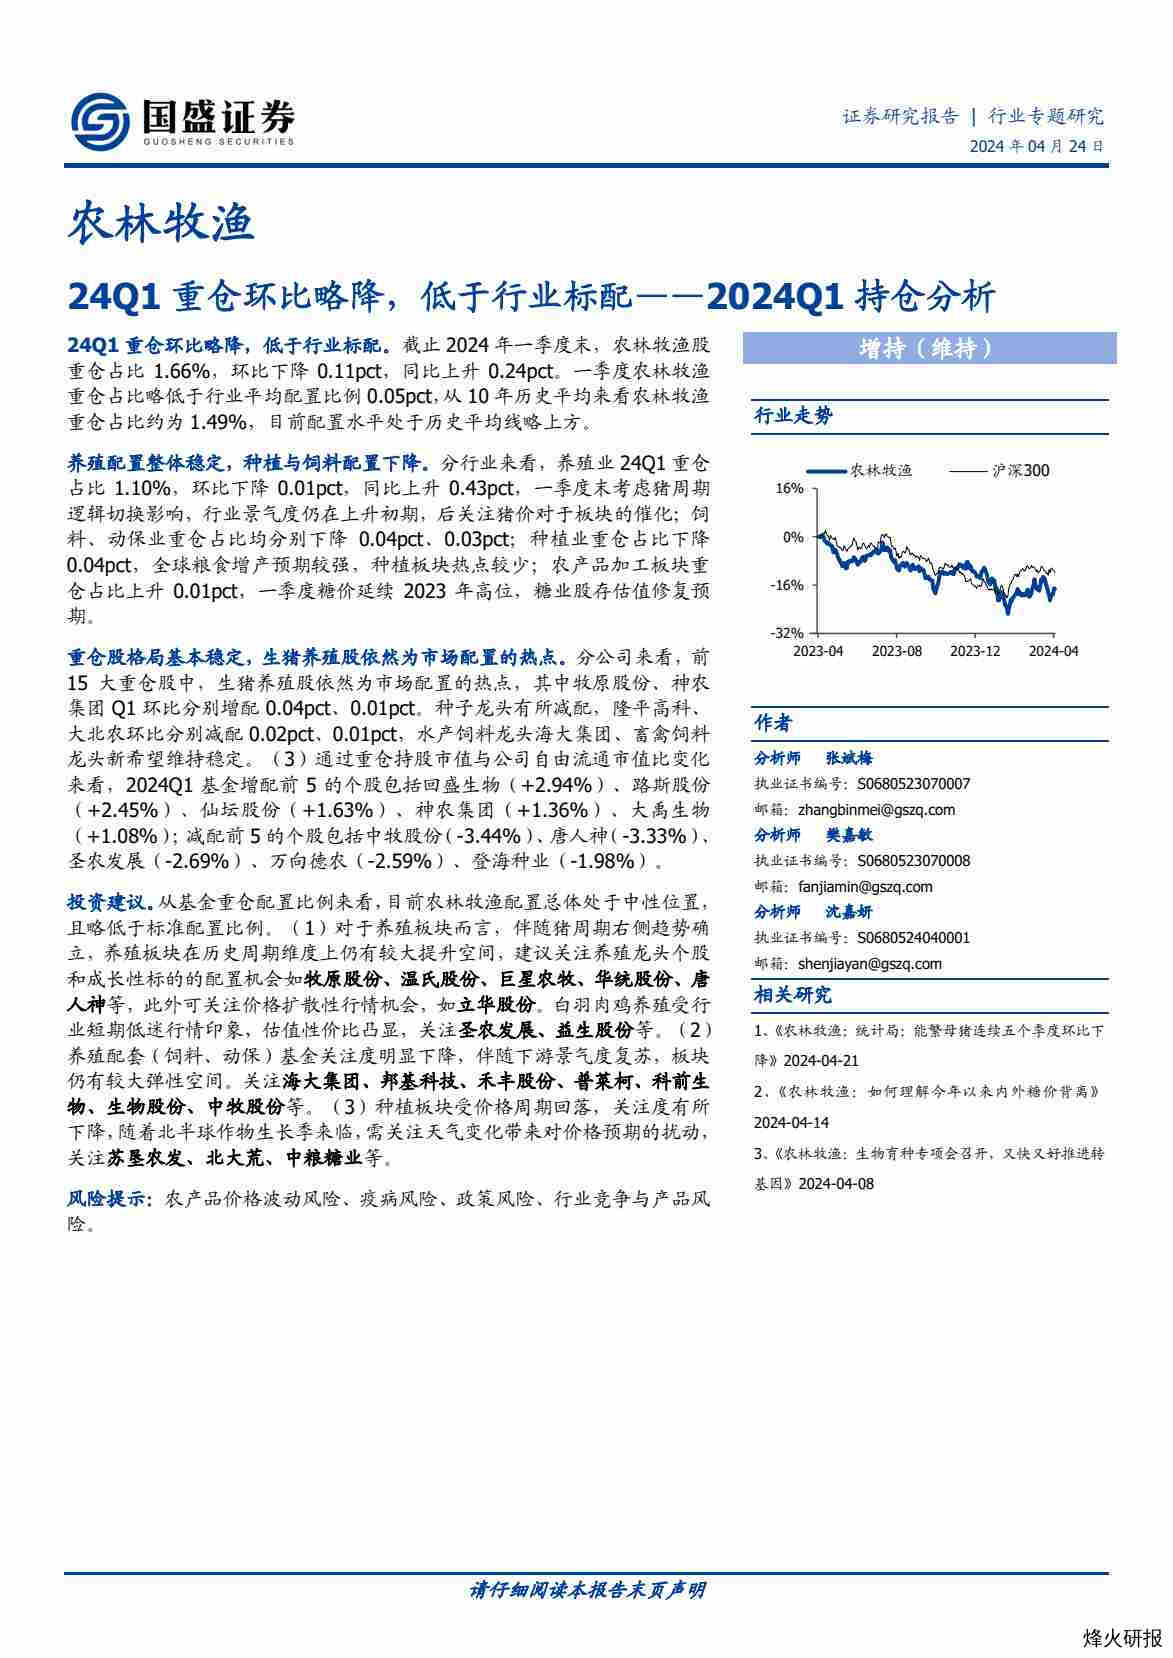 【国盛证券】农林牧渔2024Q1持仓分析：24Q1重仓环比略降，低于行业标配.pdf-第一页